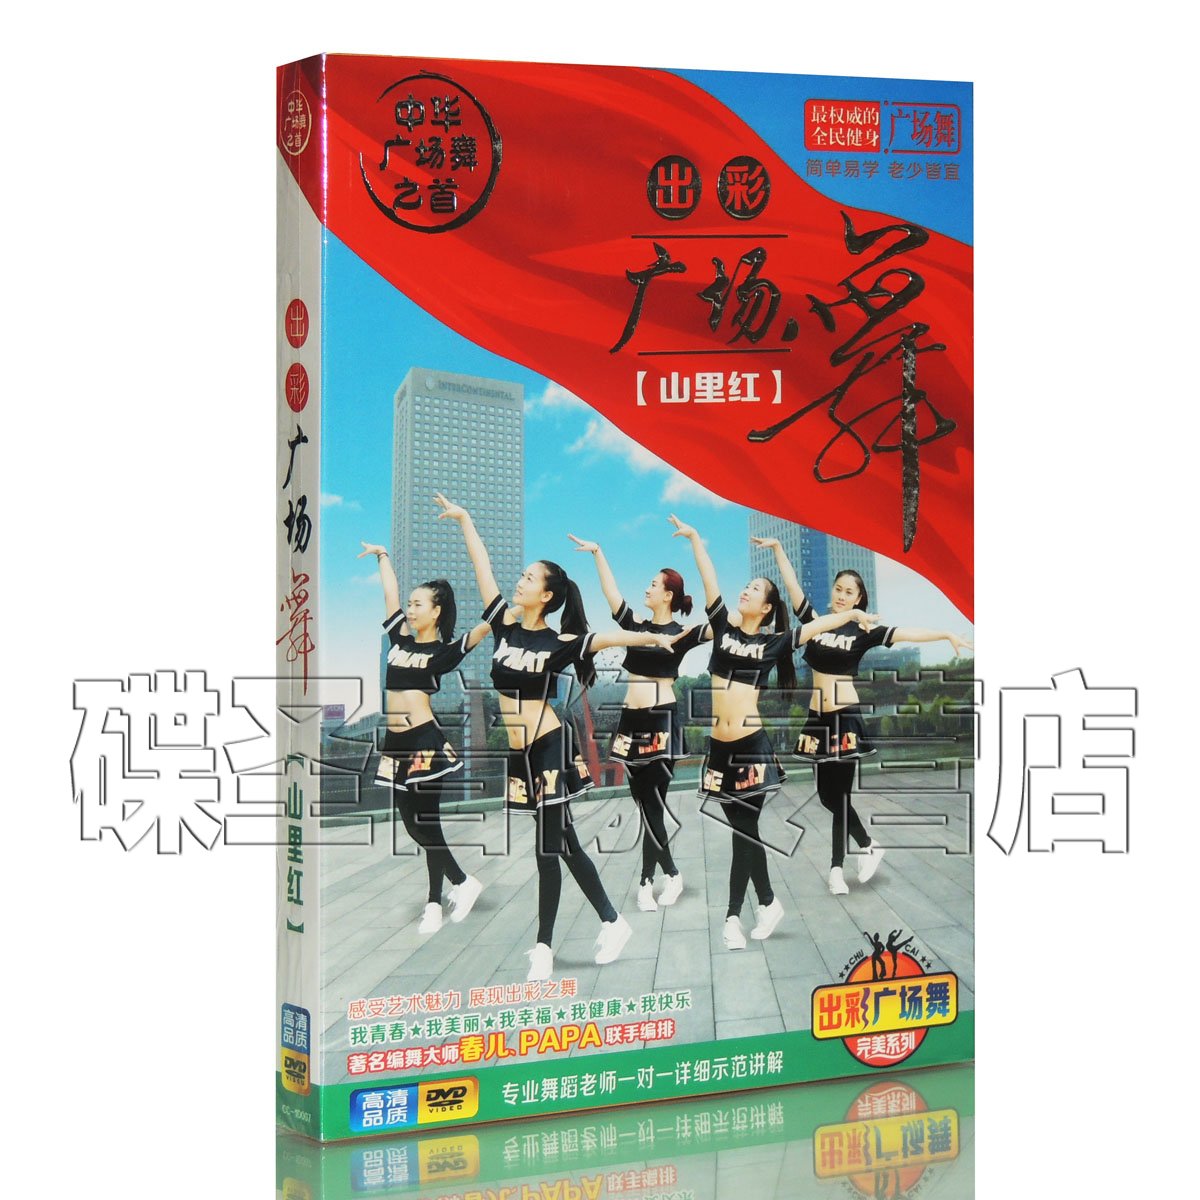 正版中老年健身舞蹈教程 出彩广场舞 教学视频dvd光盘碟片 山里红